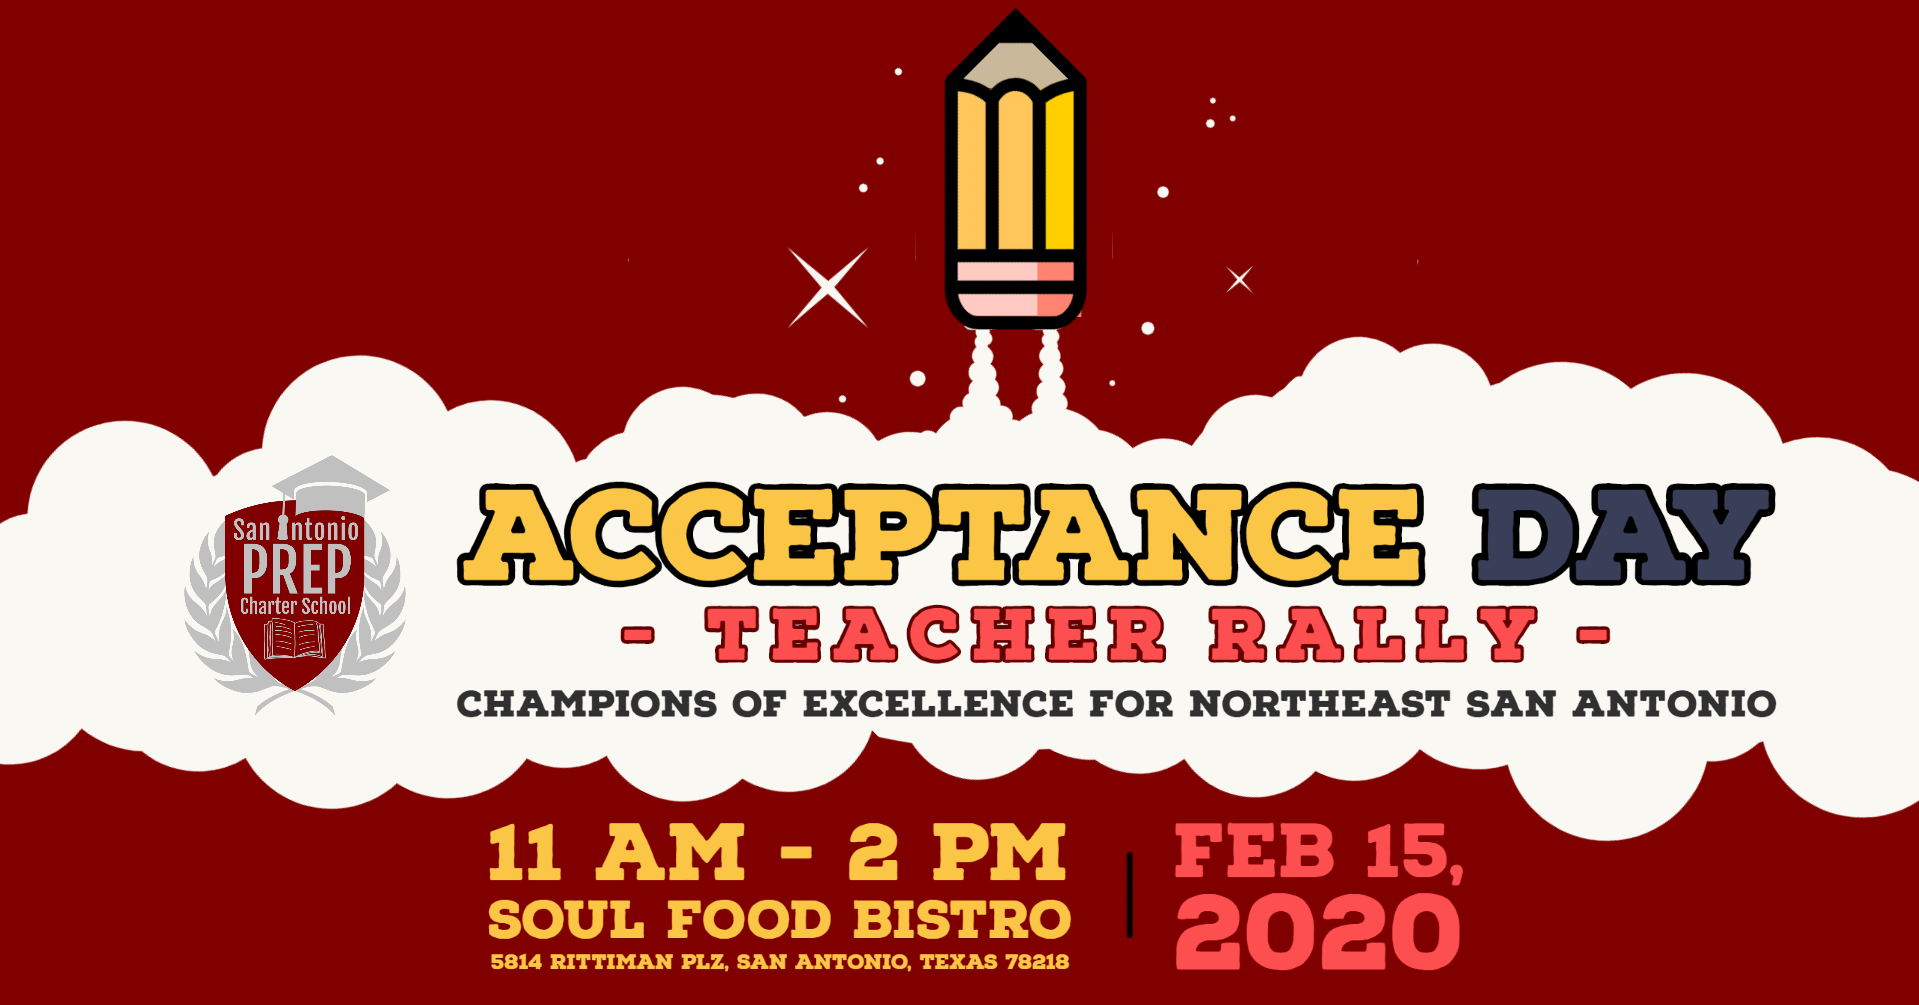 SA Prep Charter School Acceptance Day and Teacher Rally 15 FEB 2020